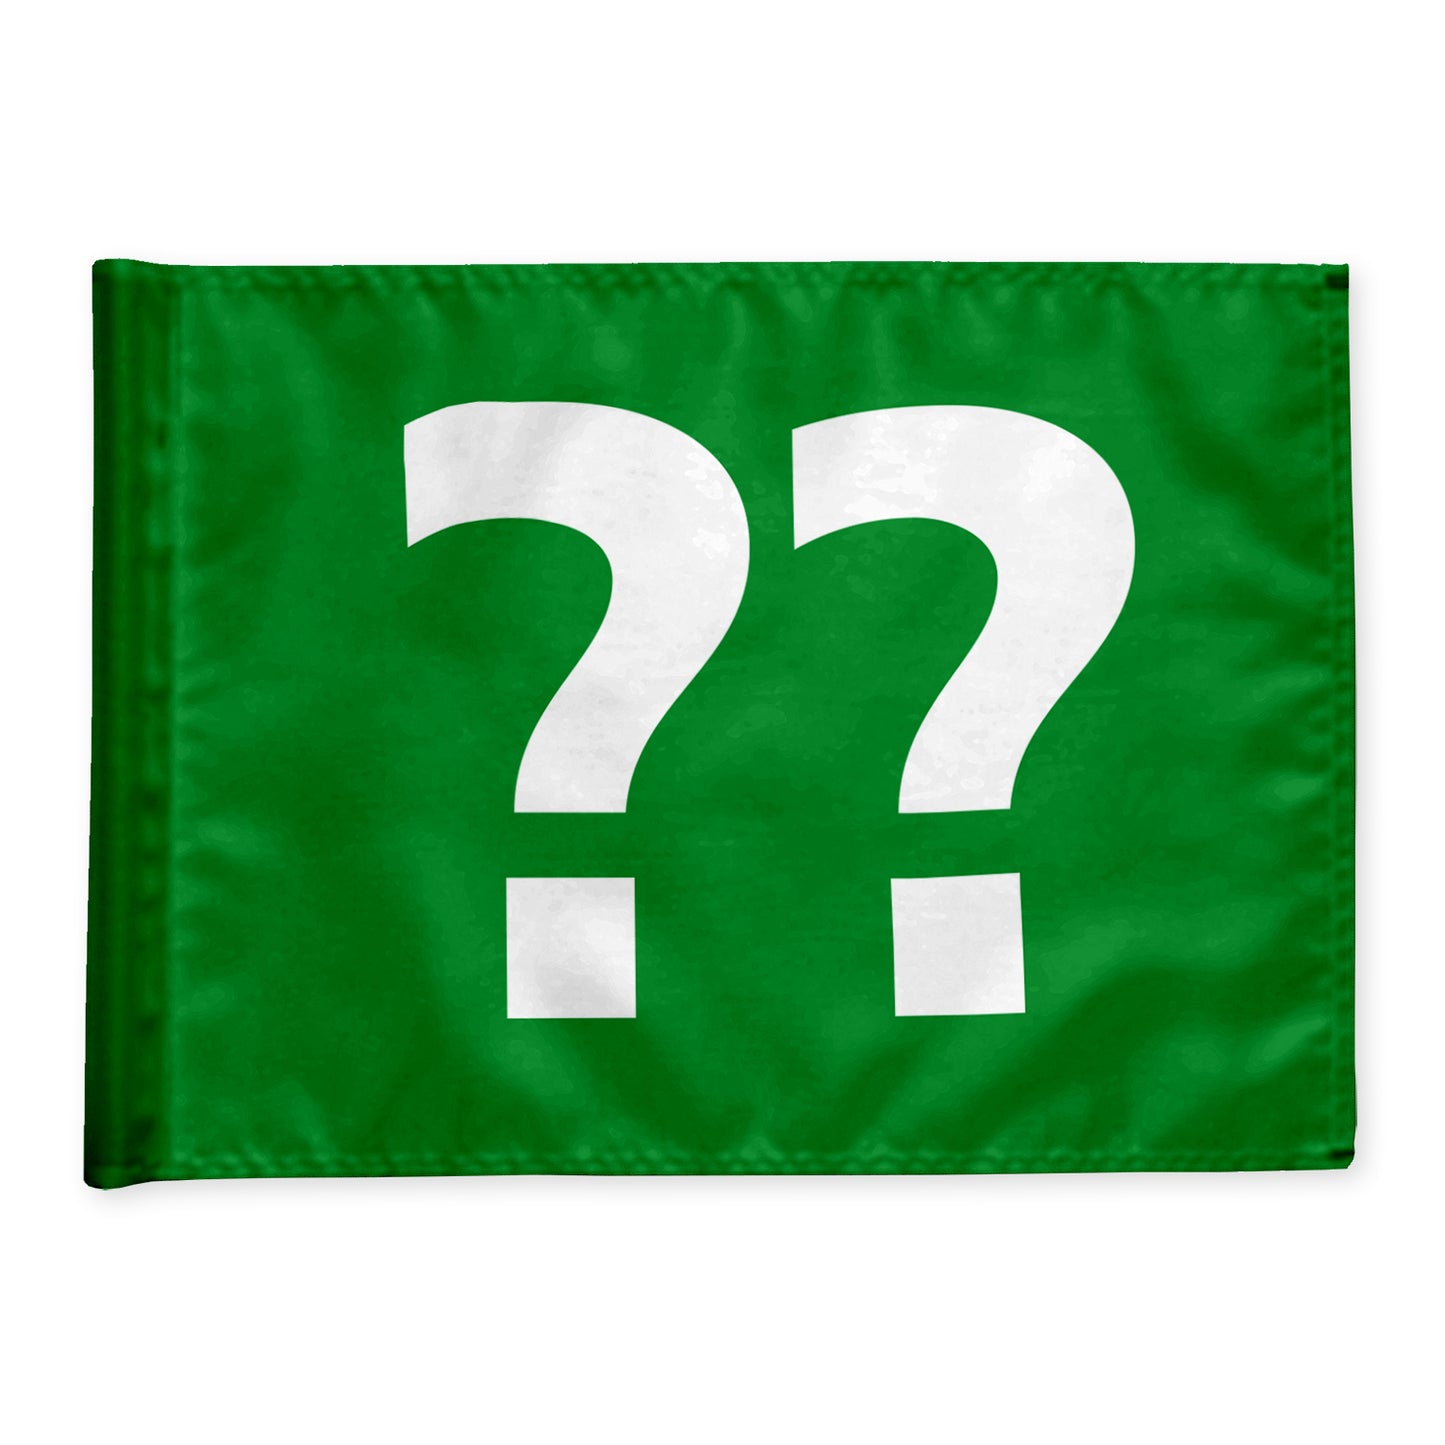 Stykvis golf flag i grøn med valgfri hulnummer, 200 gram flagdug